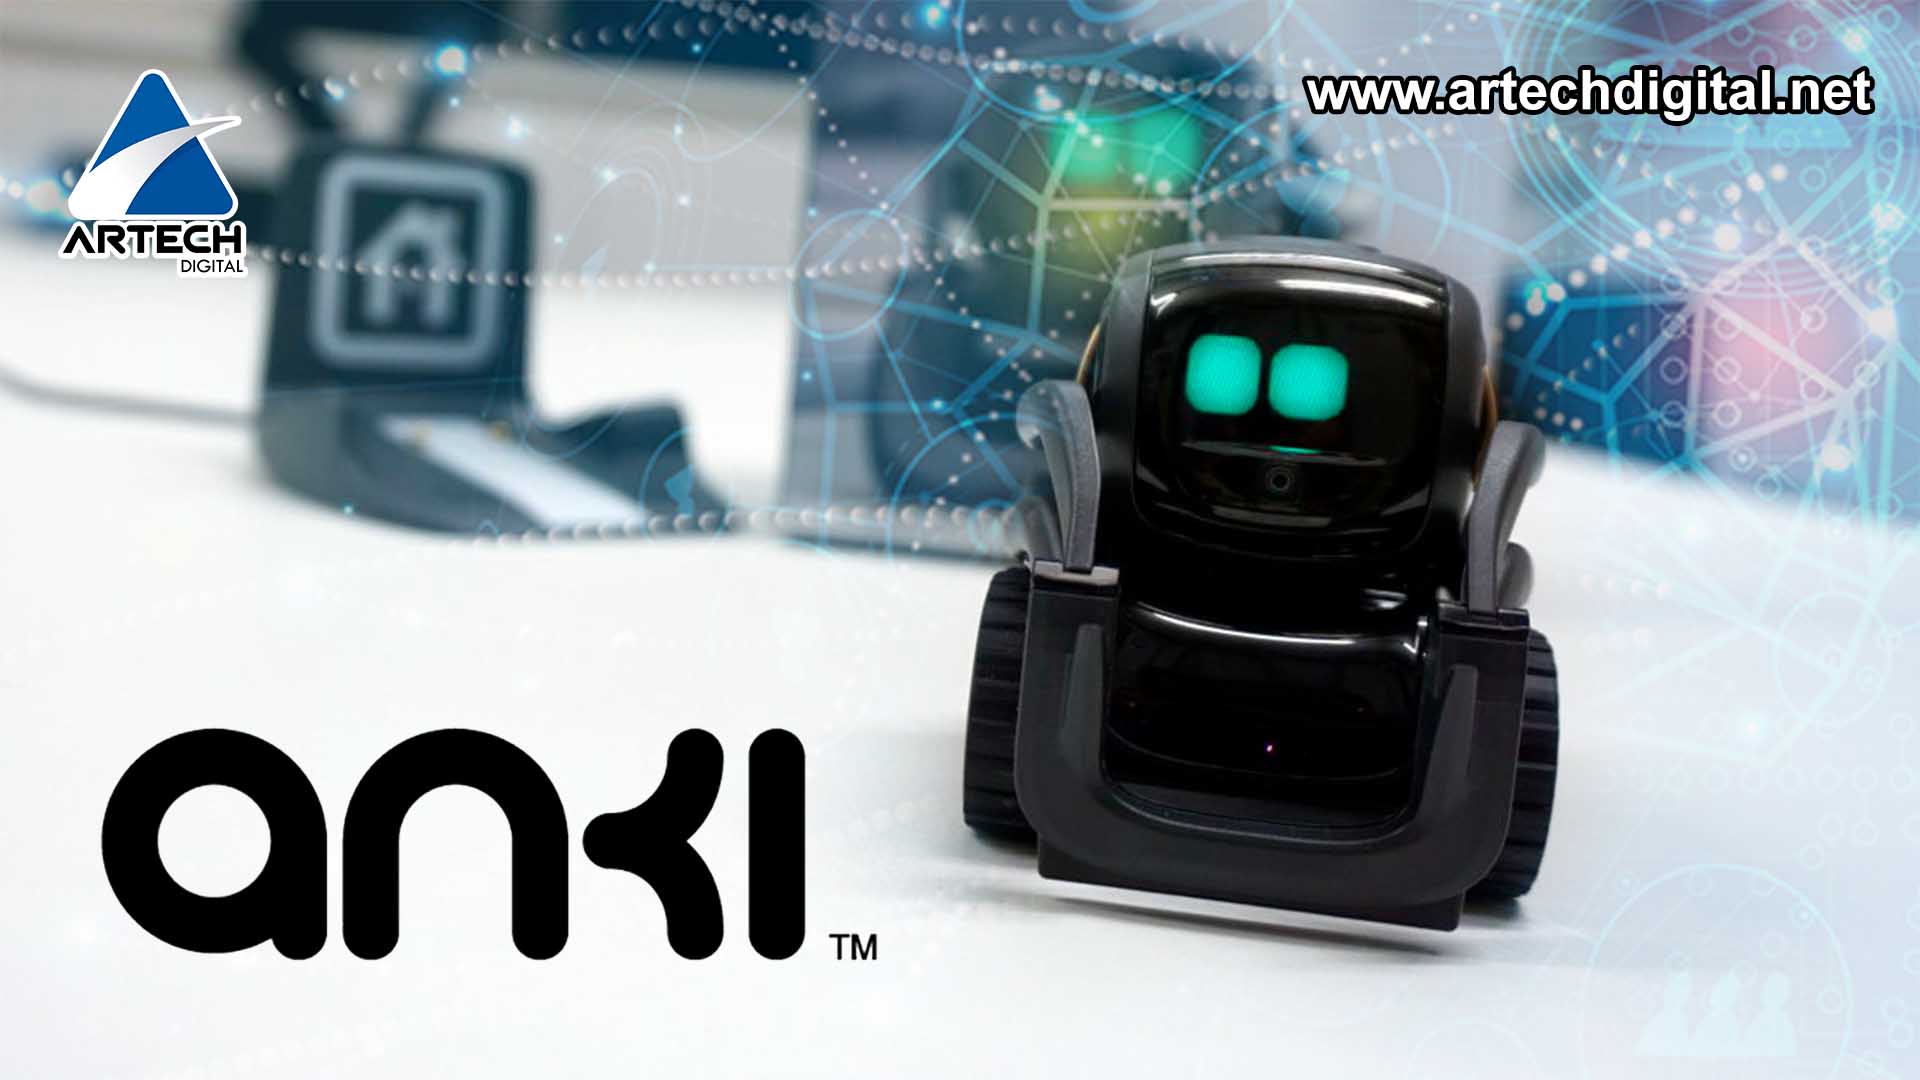 Artech Digital - Anki Vector - mini robot